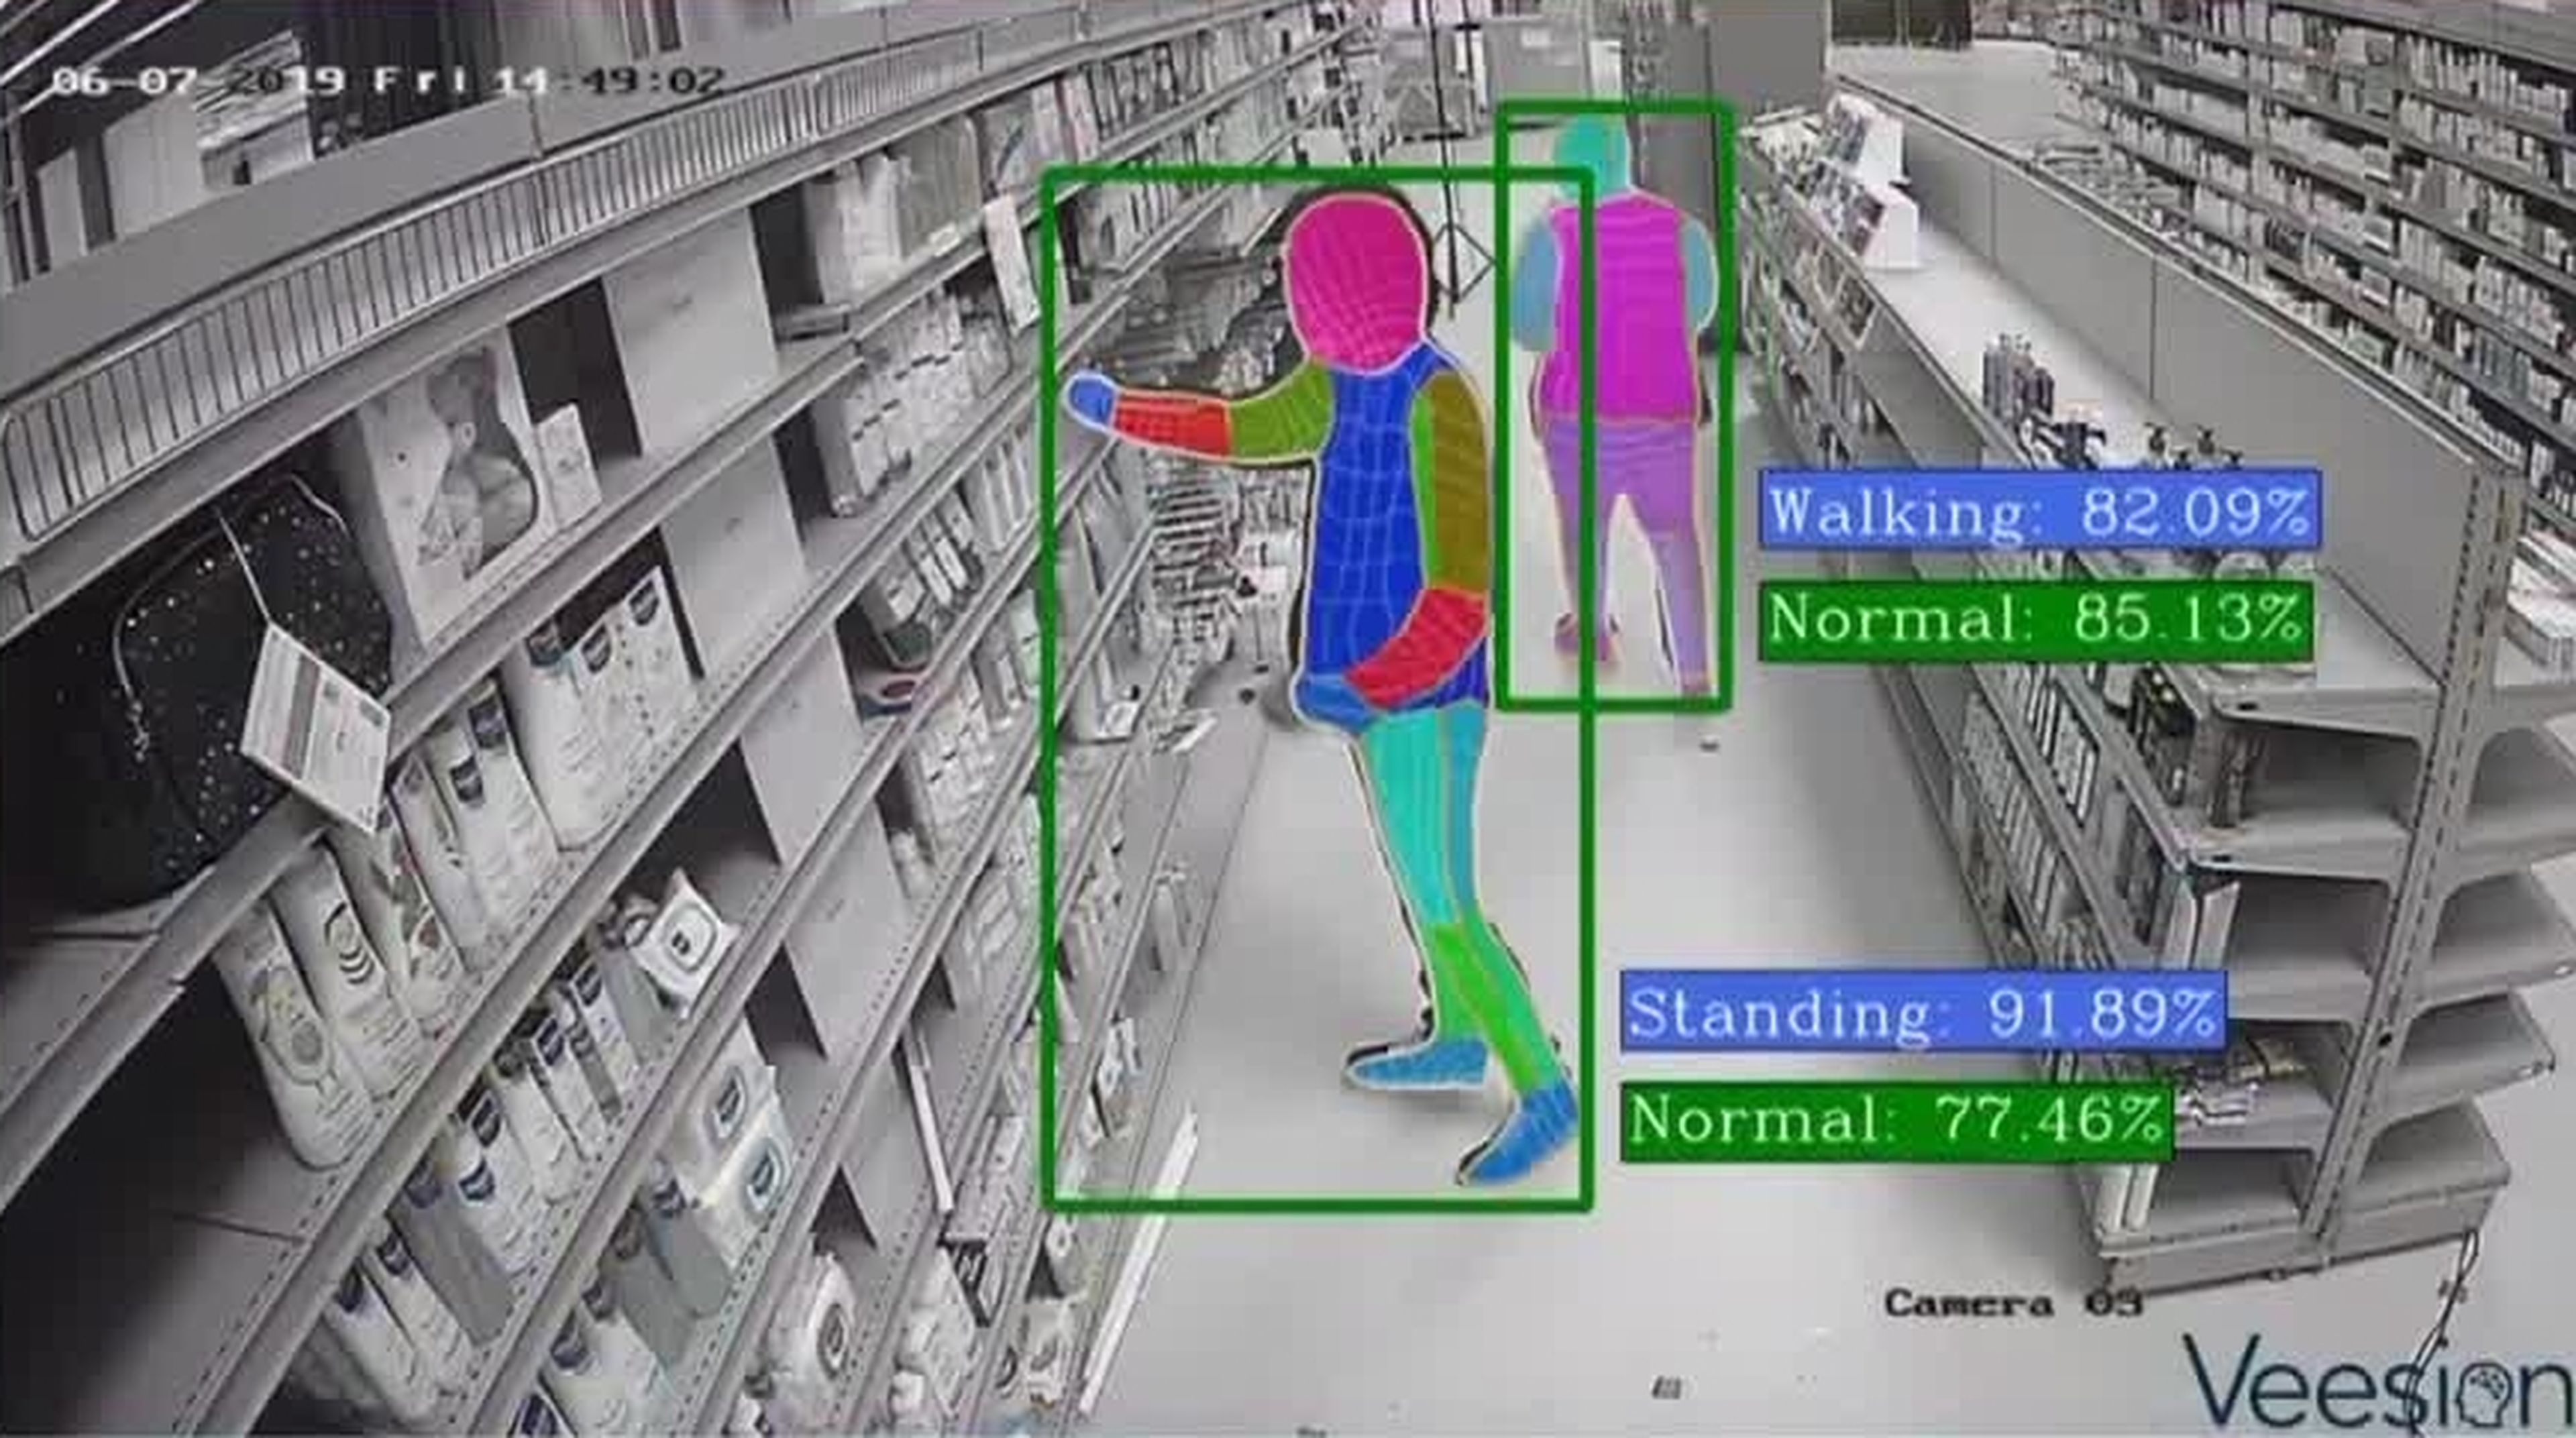 Veesion, la IA que detecta a los ladrones por sus gestos, ya funciona en muchos supermercados españoles